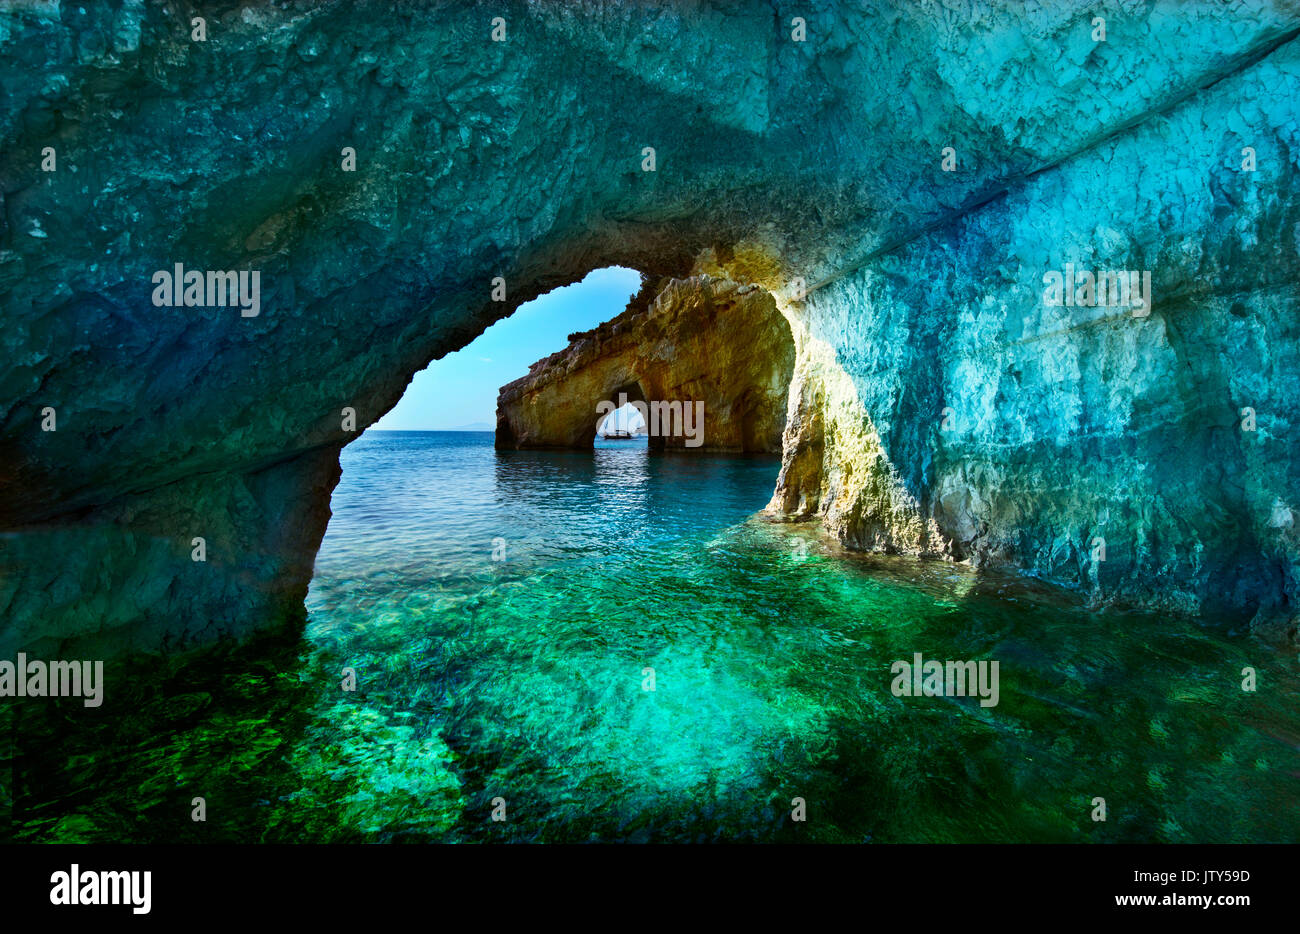 La Grèce, l'île de Zakynthos. L'une des plus belles grottes blue dans le monde. La mer Ionienne. Grottes bleues de l'île de Zakynthos Banque D'Images